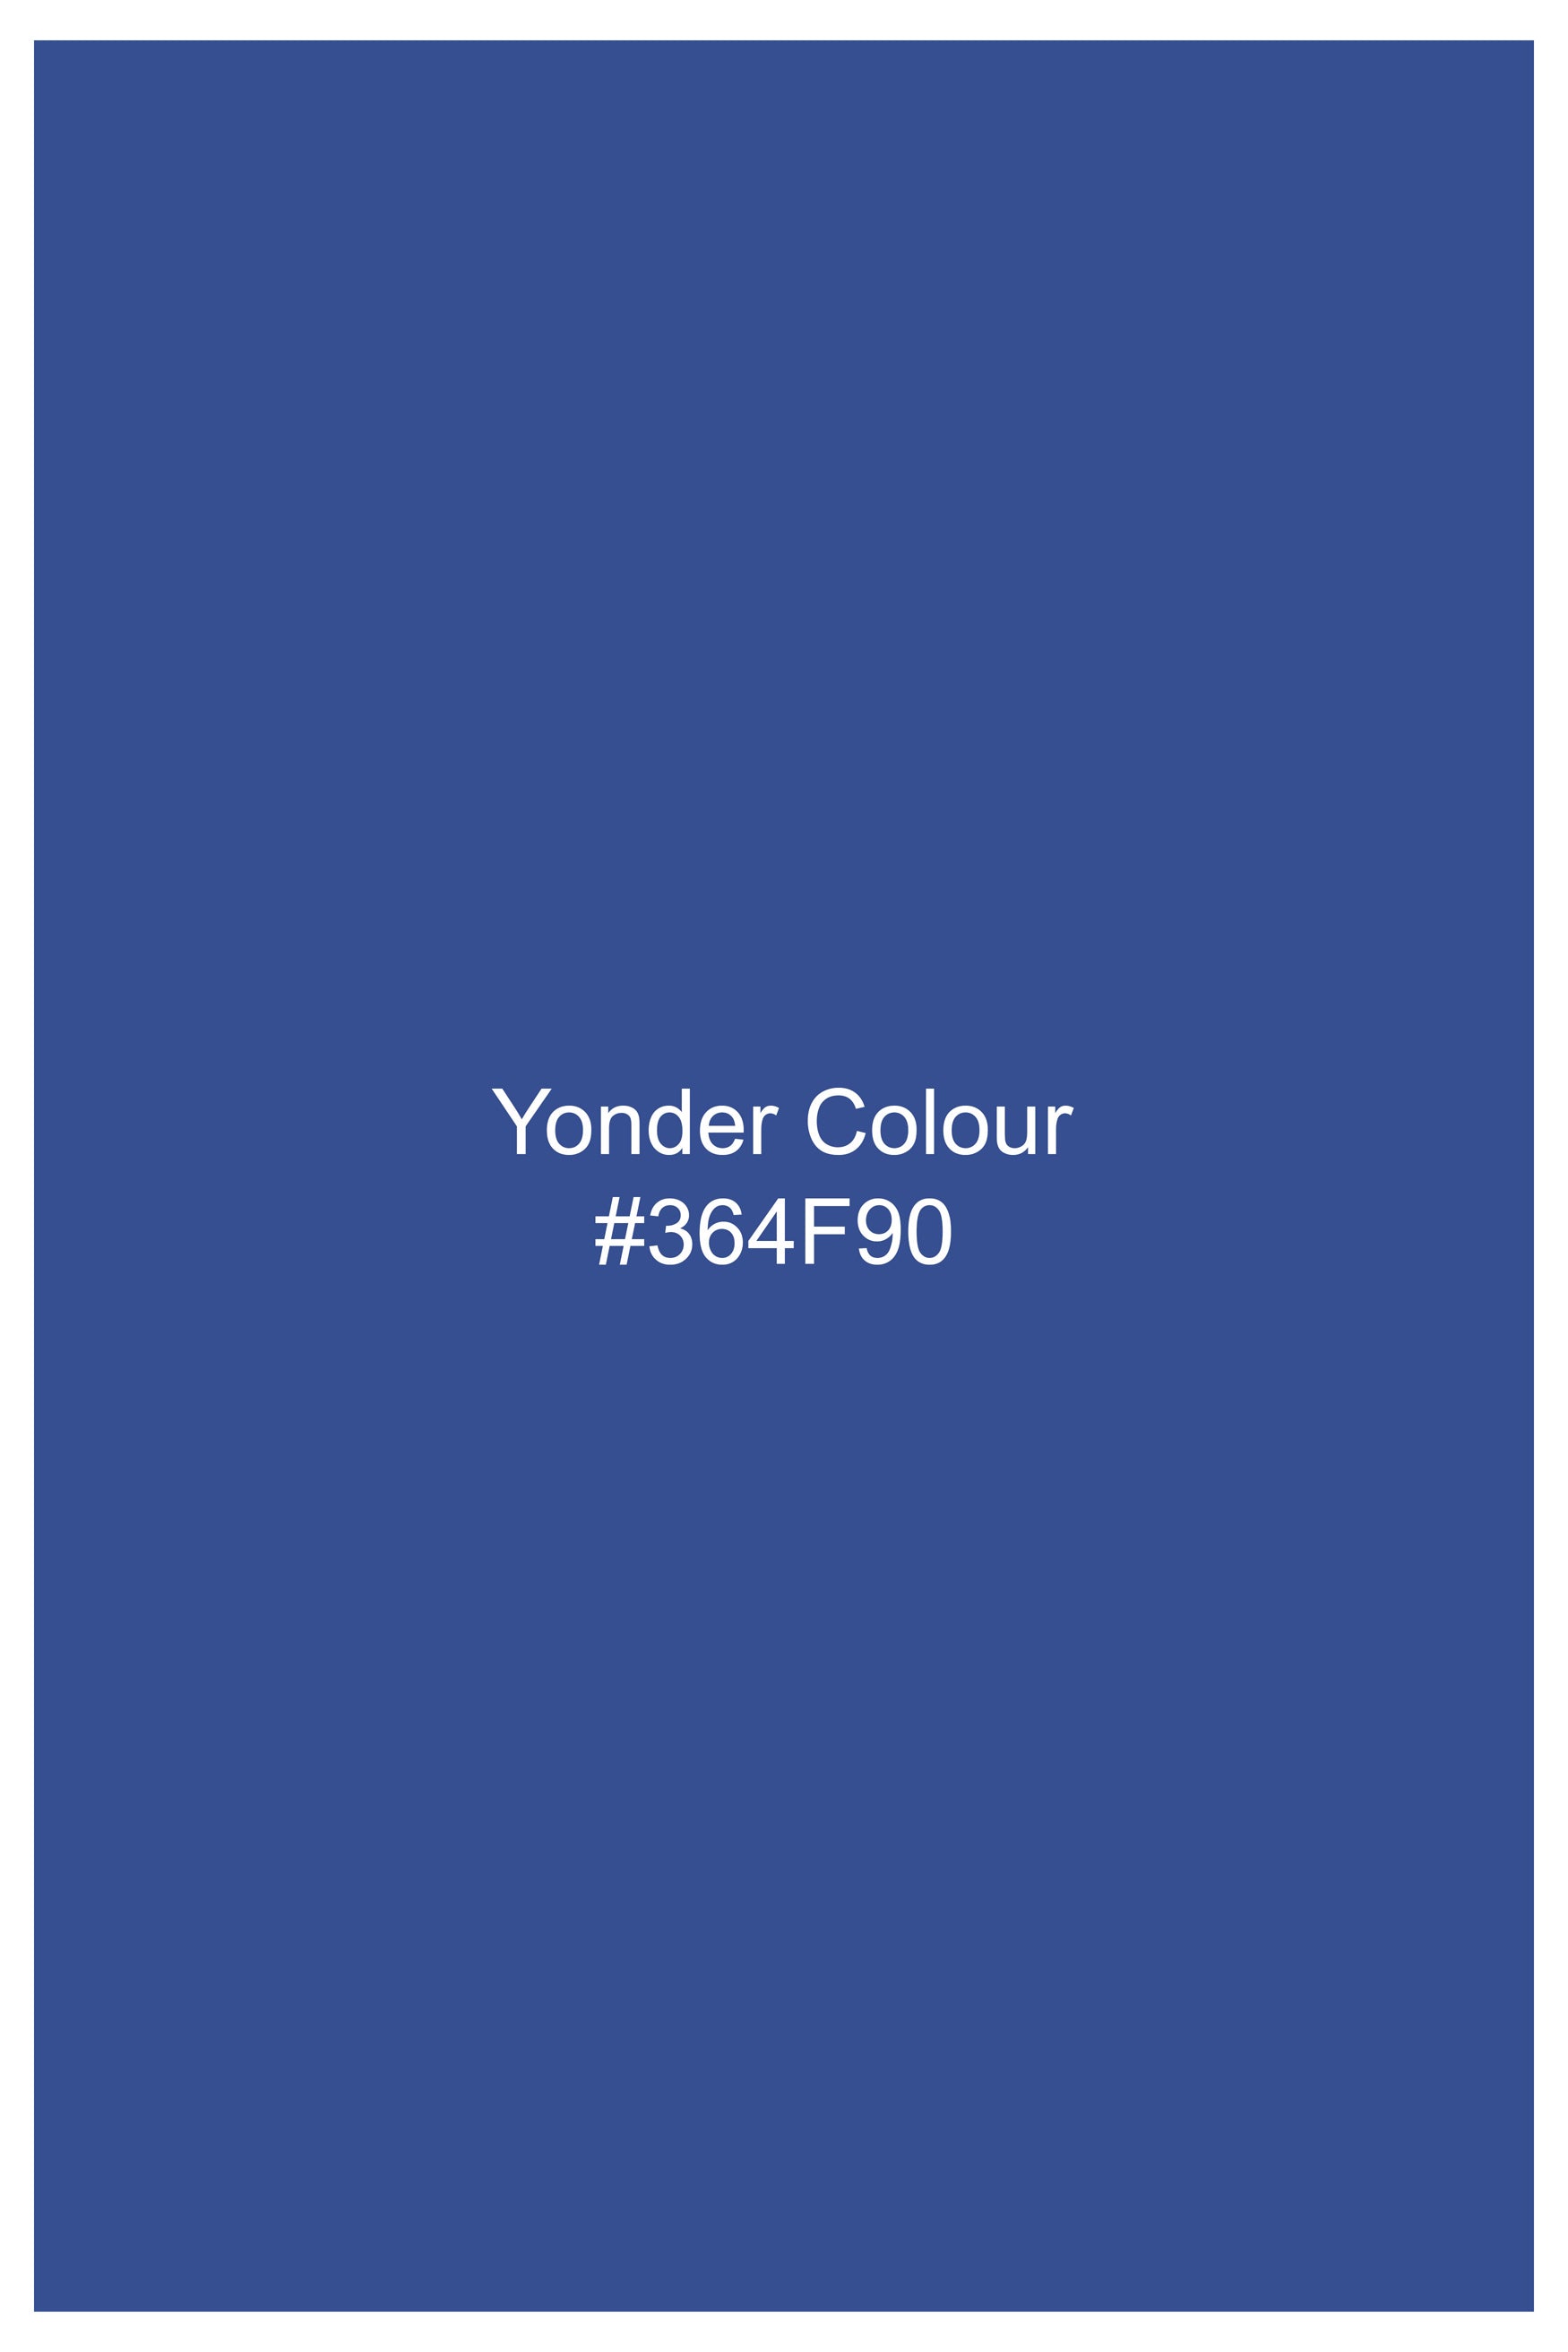 Yonder Blue Royal Oxford Shirt